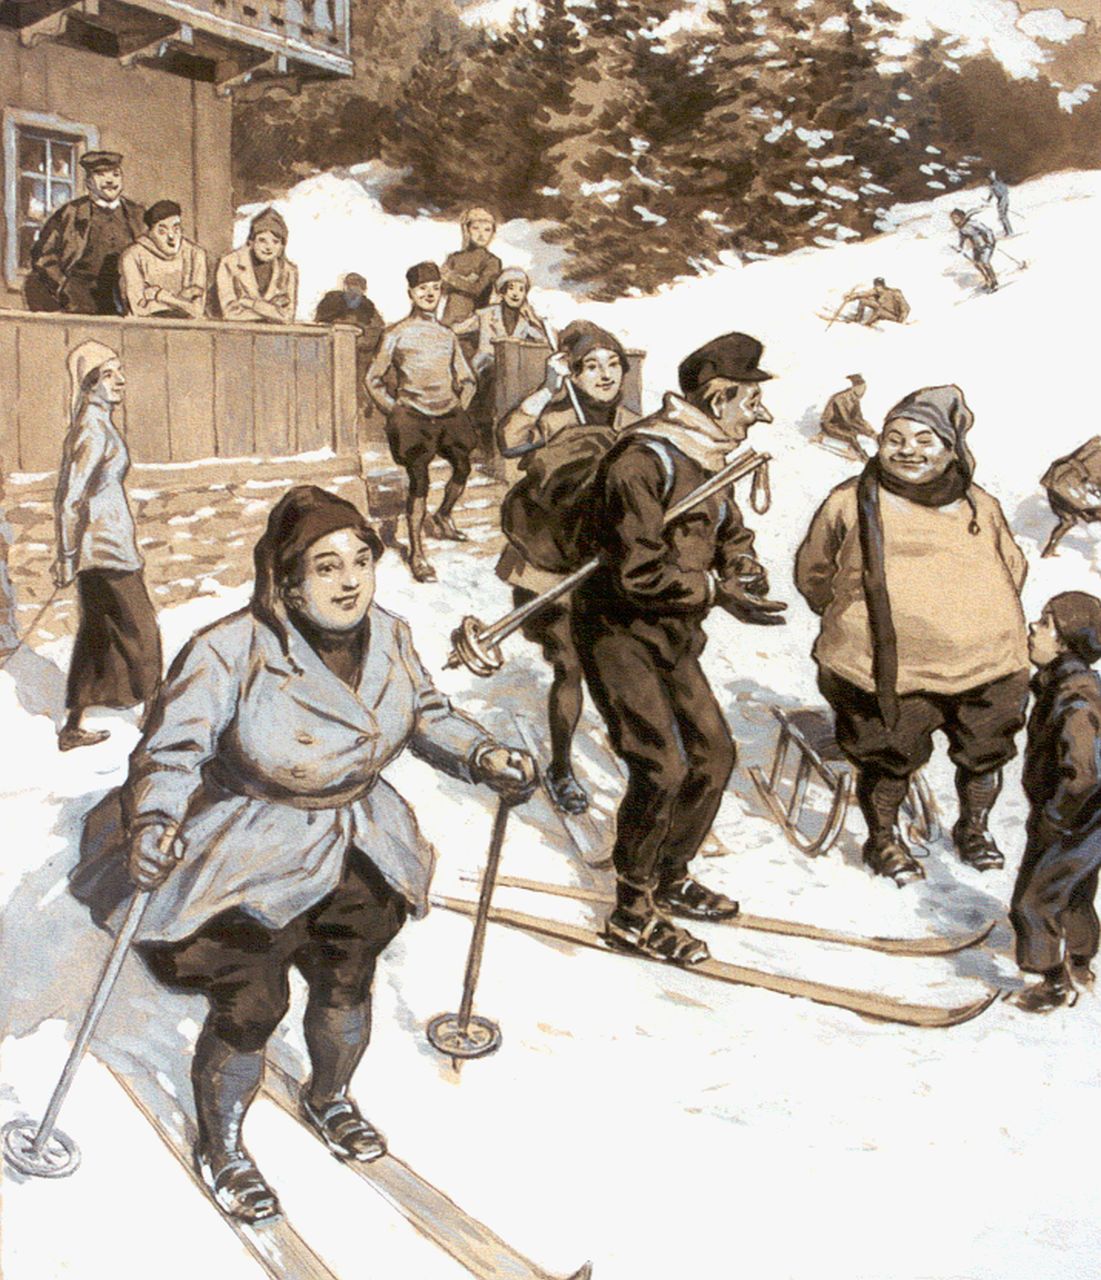 Meissl A.E. Ritter von  | August Meissl, Winter sports, Kreide und Gouache auf Papier 34,0 x 28,5 cm, signed l.l.